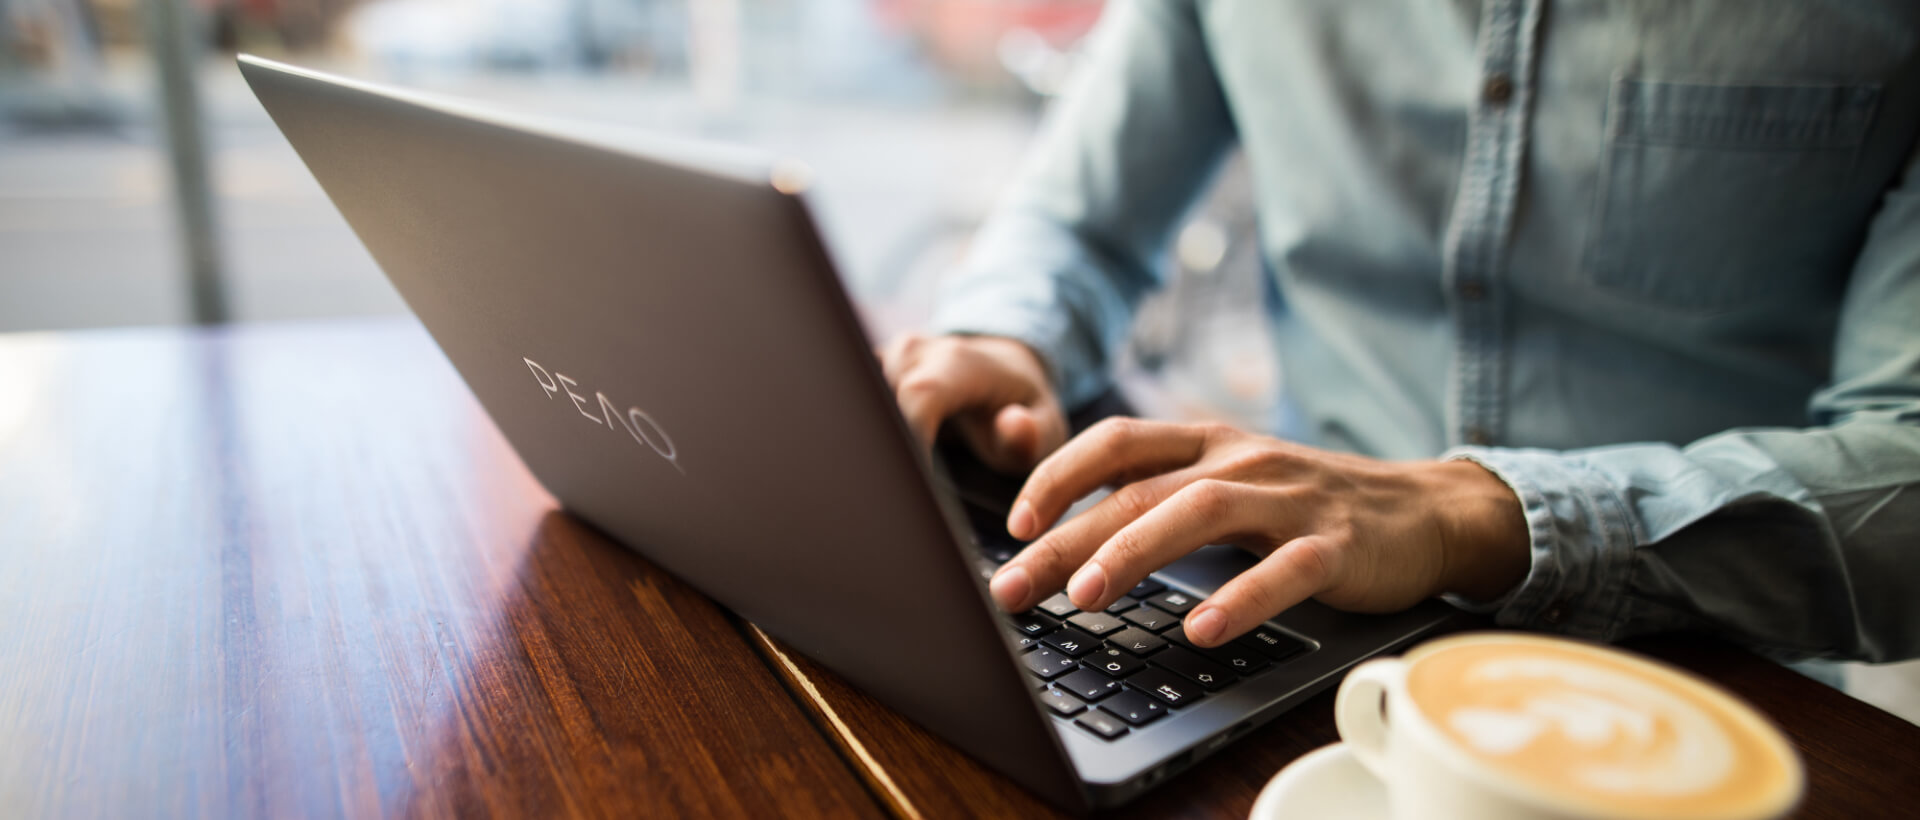 Un joven escribe en un portátil PEAQ, junto a él una taza de café llena, está sentado en una cafetería, primer plano, panorama